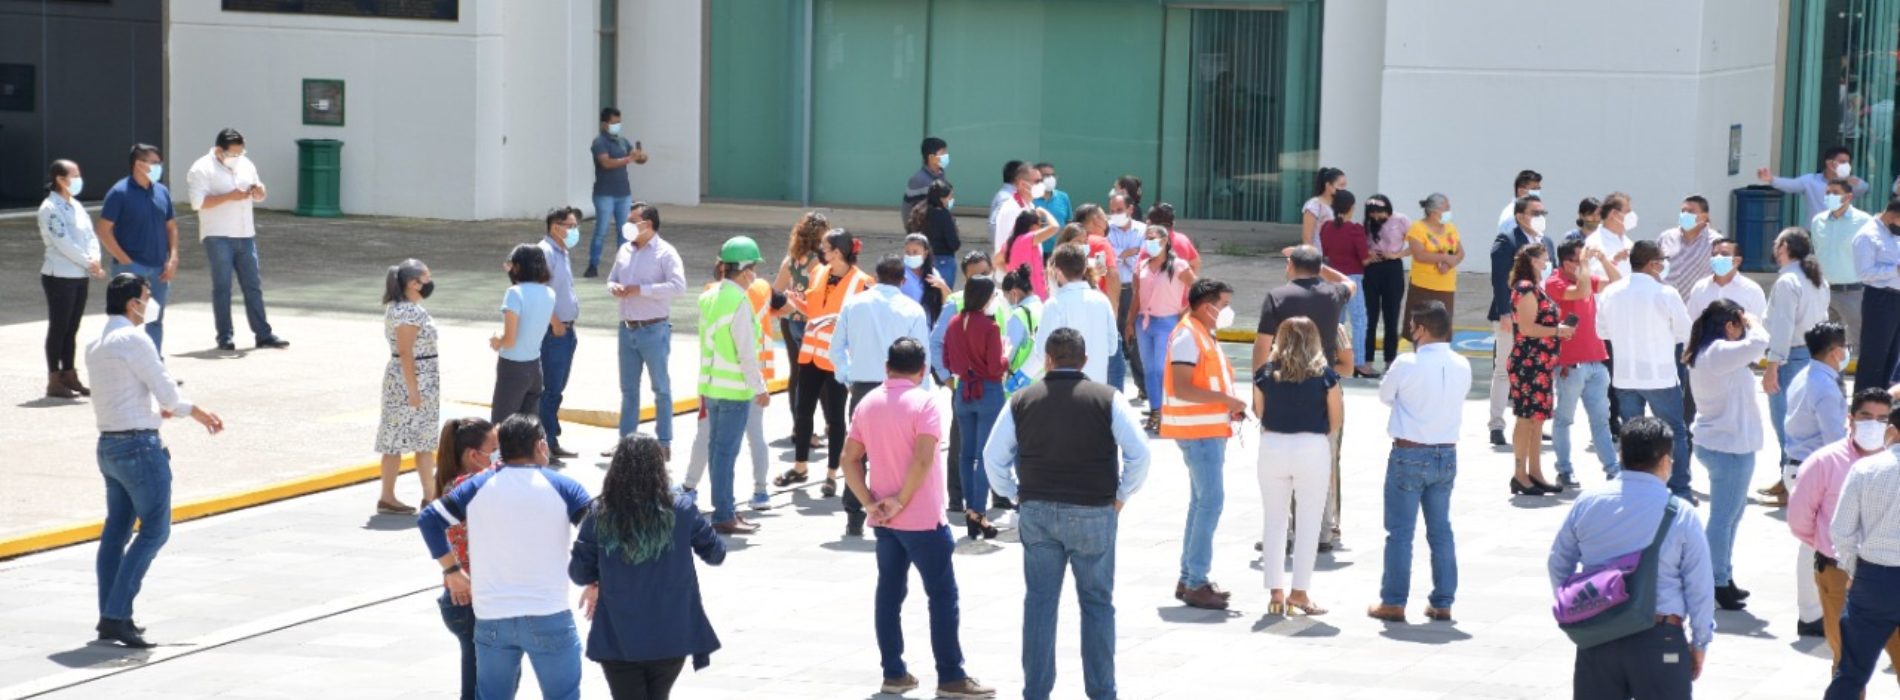 Congreso de Oaxaca participa en Primer Simulacro Sísmico Nacional